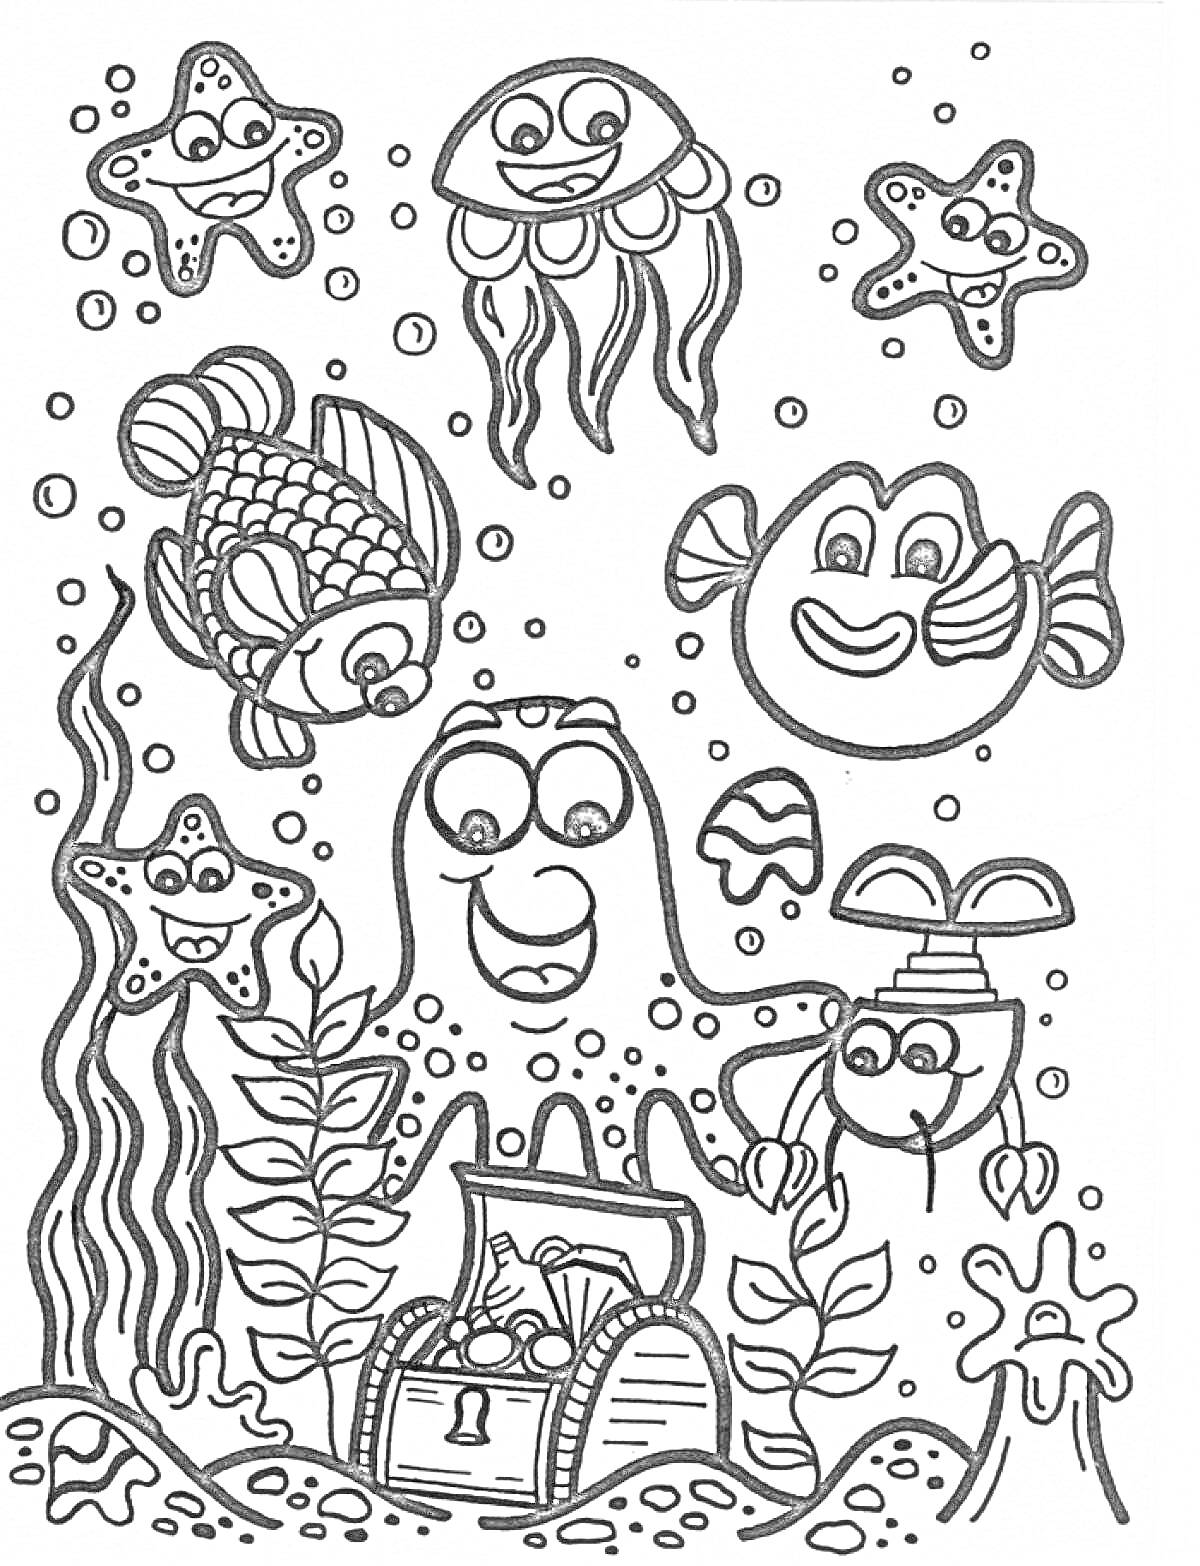 Морские обитатели - рыбы, осьминог с сундуком, медуза, морские звезды, водоросли